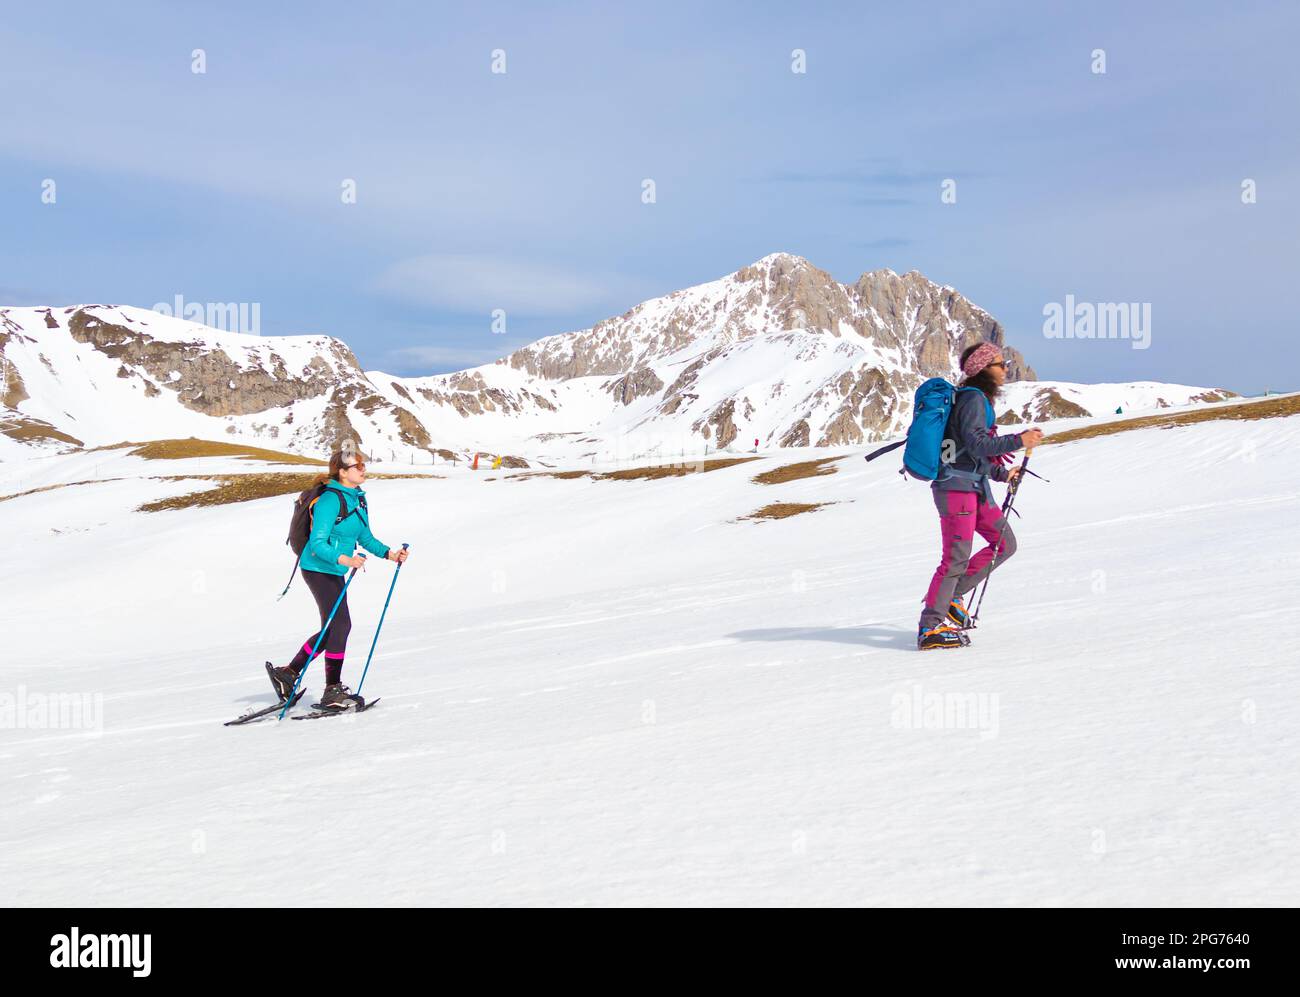 Gran Sasso (Italia) - il trekking sulla neve in Abruzzo, da campo Imperatore al Monte Scindarella, oltre 2200 metri, con la vetta del Corno Grande Foto Stock